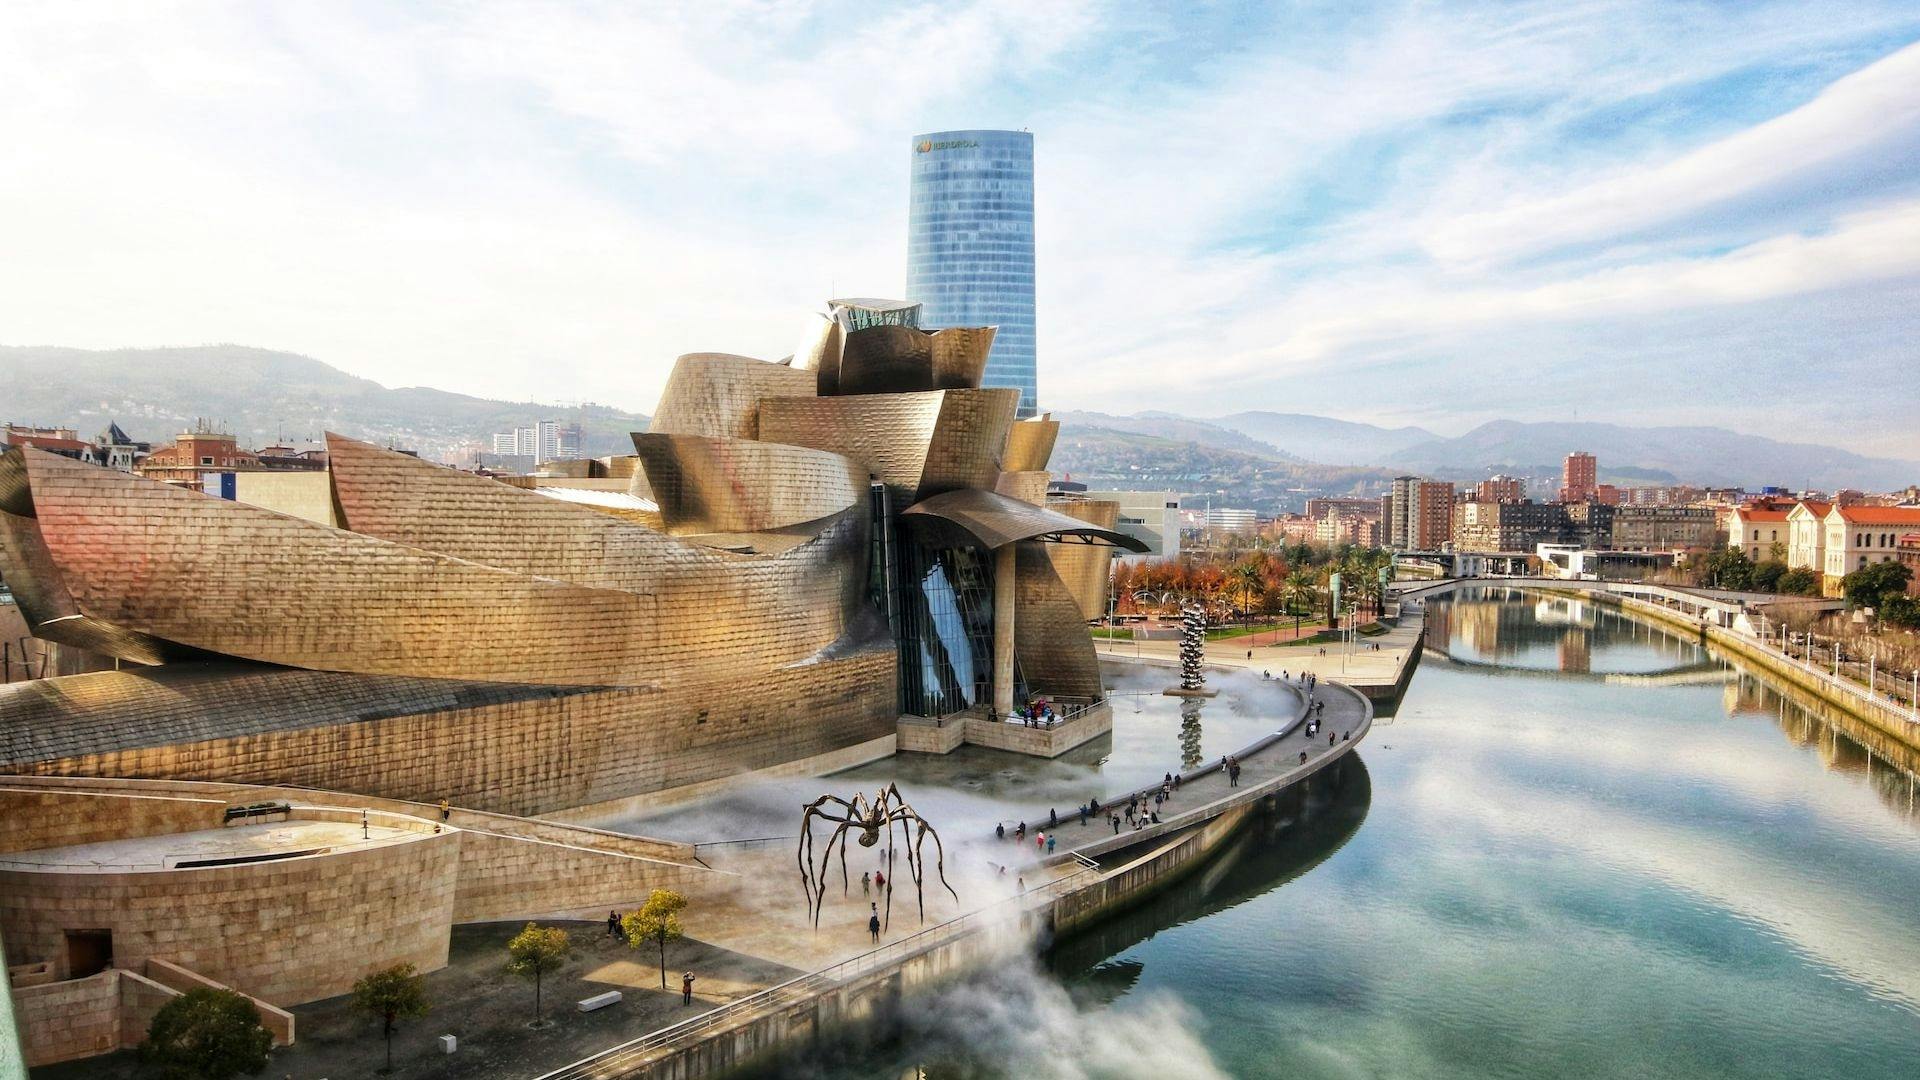 Bilet wstępu do Muzeum Guggenheima w Bilbao